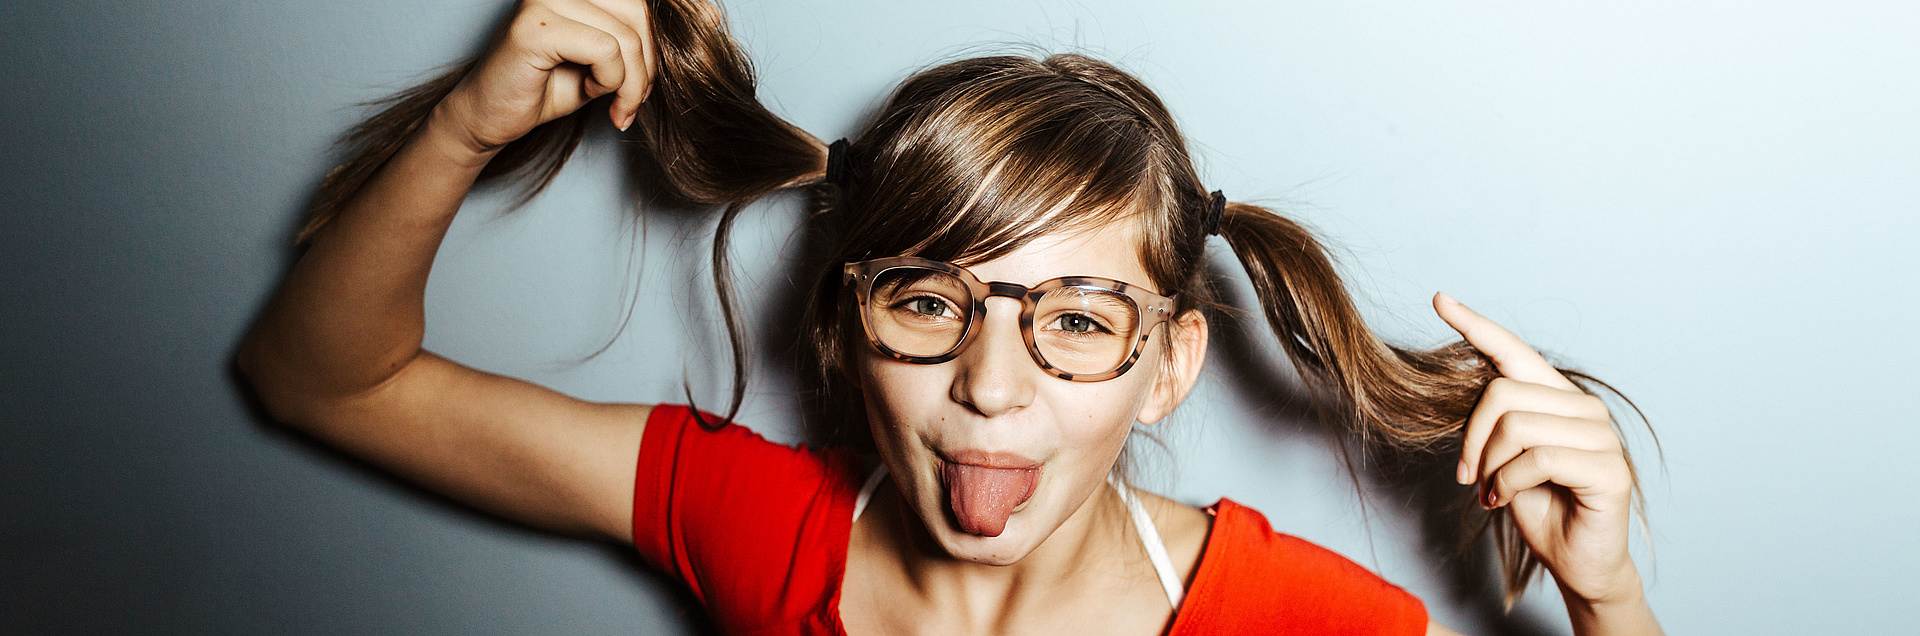 Kleines grinsendes Mädchen mit Zöpfen und Brille 